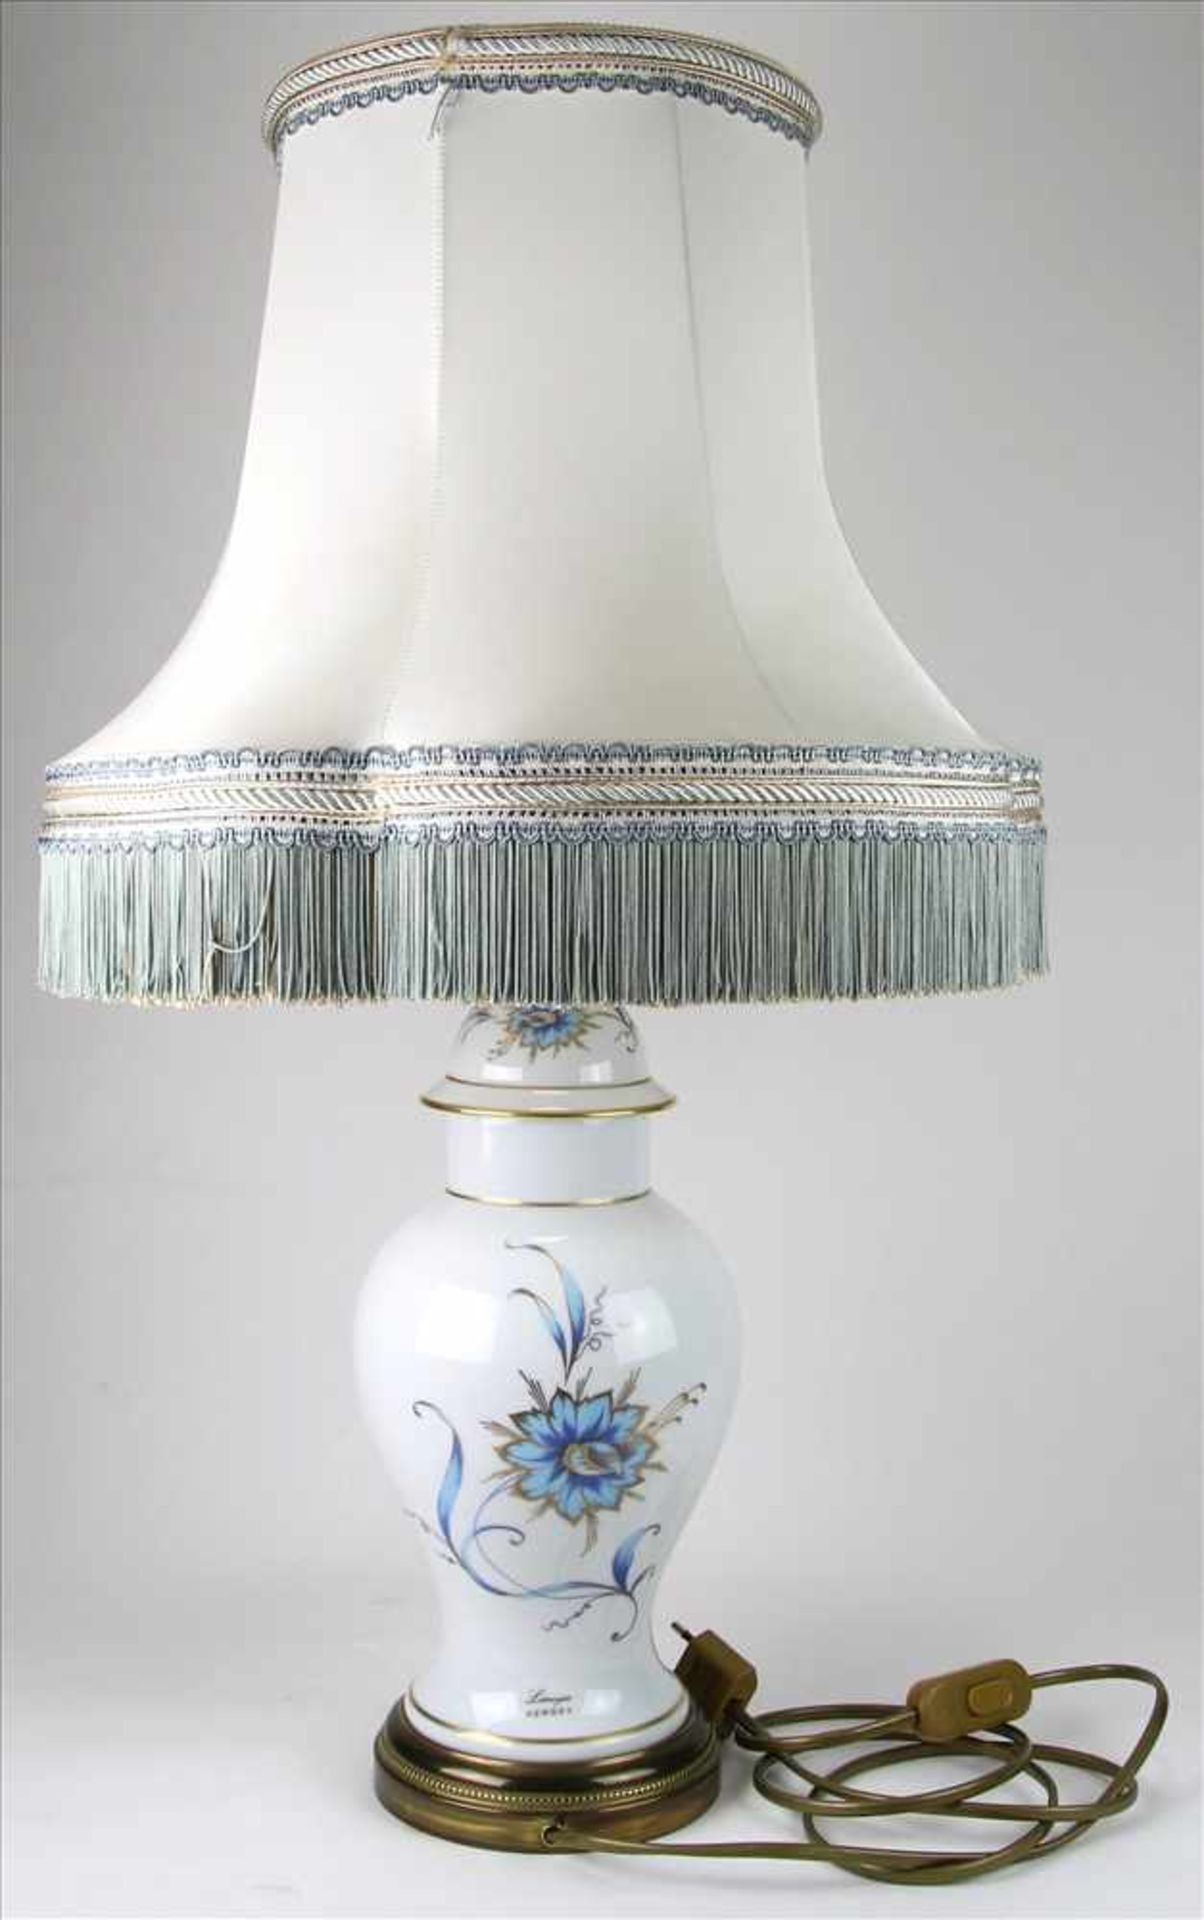 TischlampeLimoges Frankreich 20. Jh. Barocke Vasenform. Porzellan mit Blumendekor und eckigem - Bild 2 aus 4